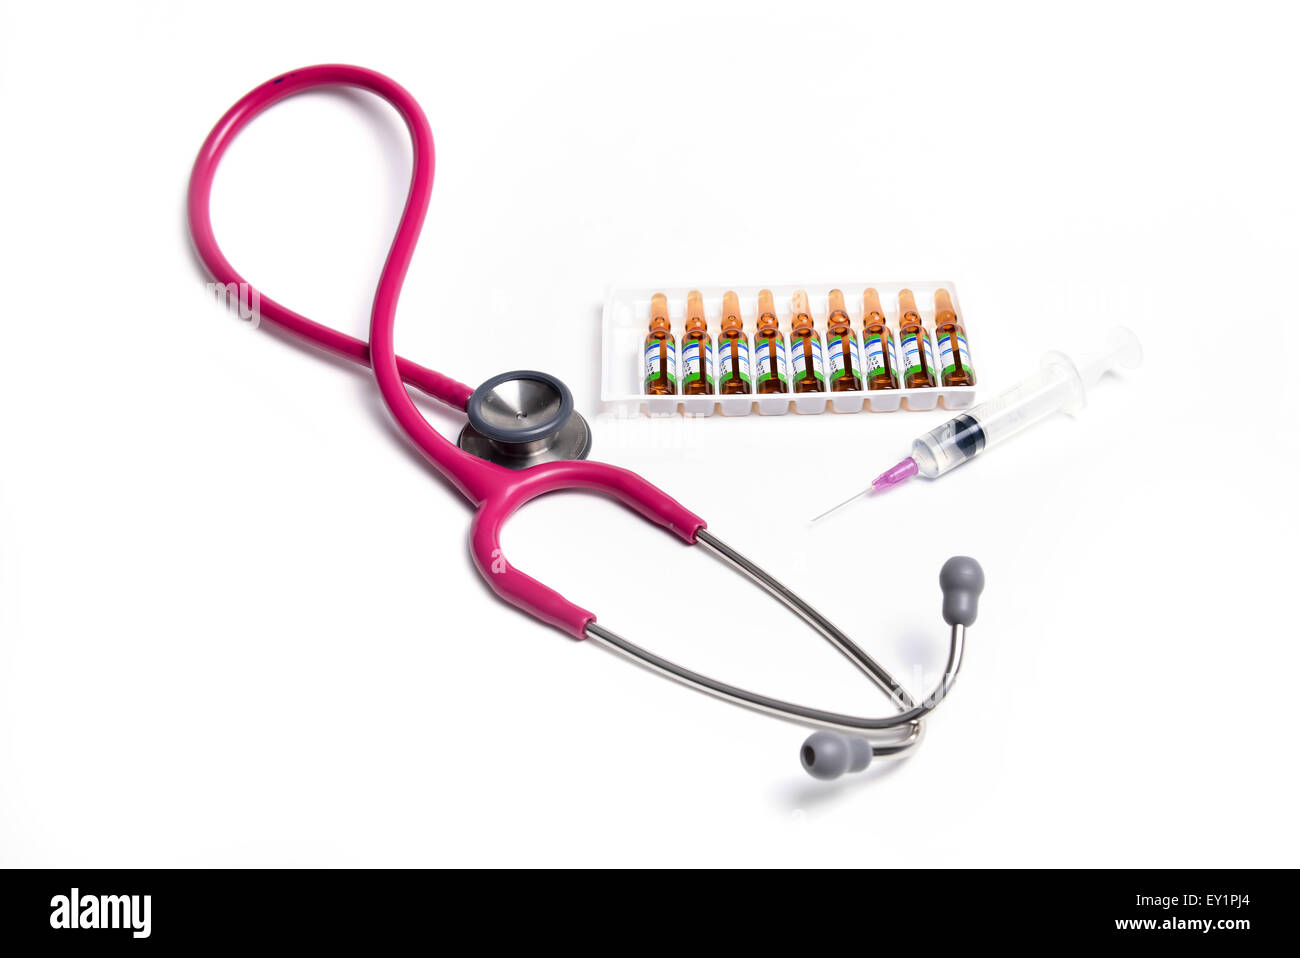 ampule syringe and stethoscope on white table Stock Photo